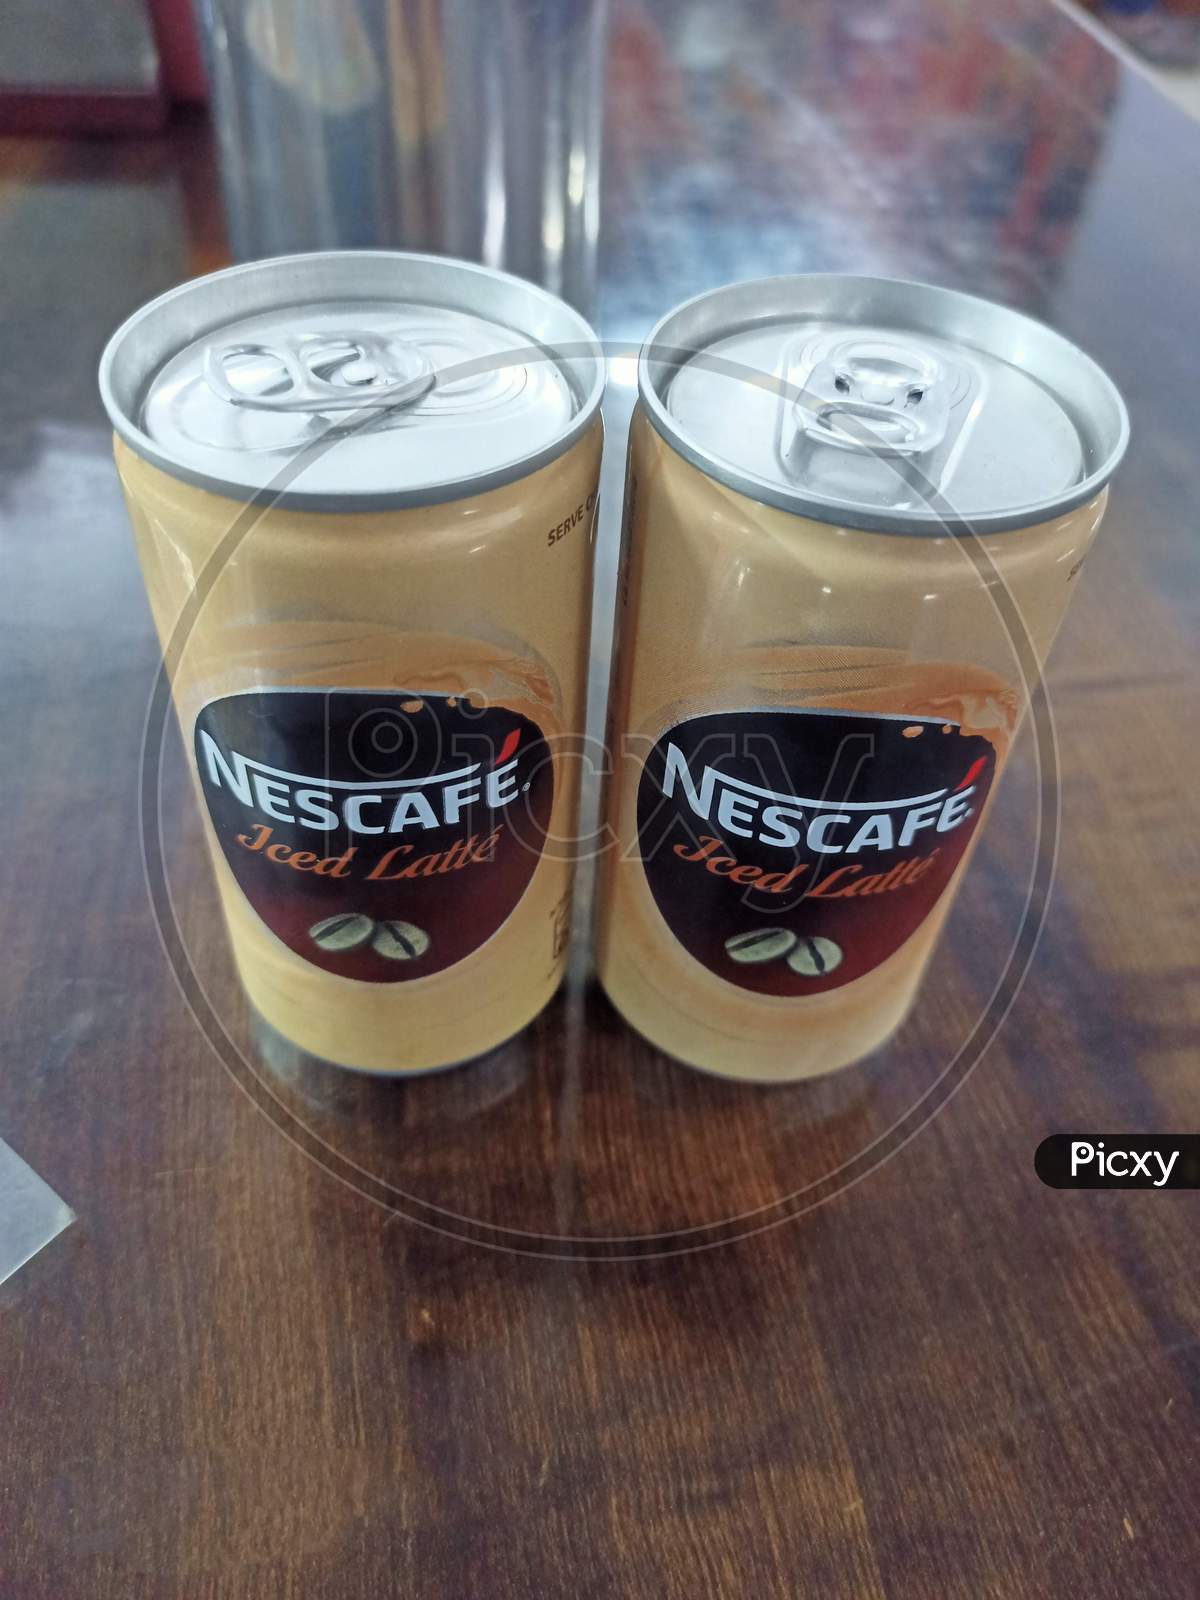 Nescafe cold coffee